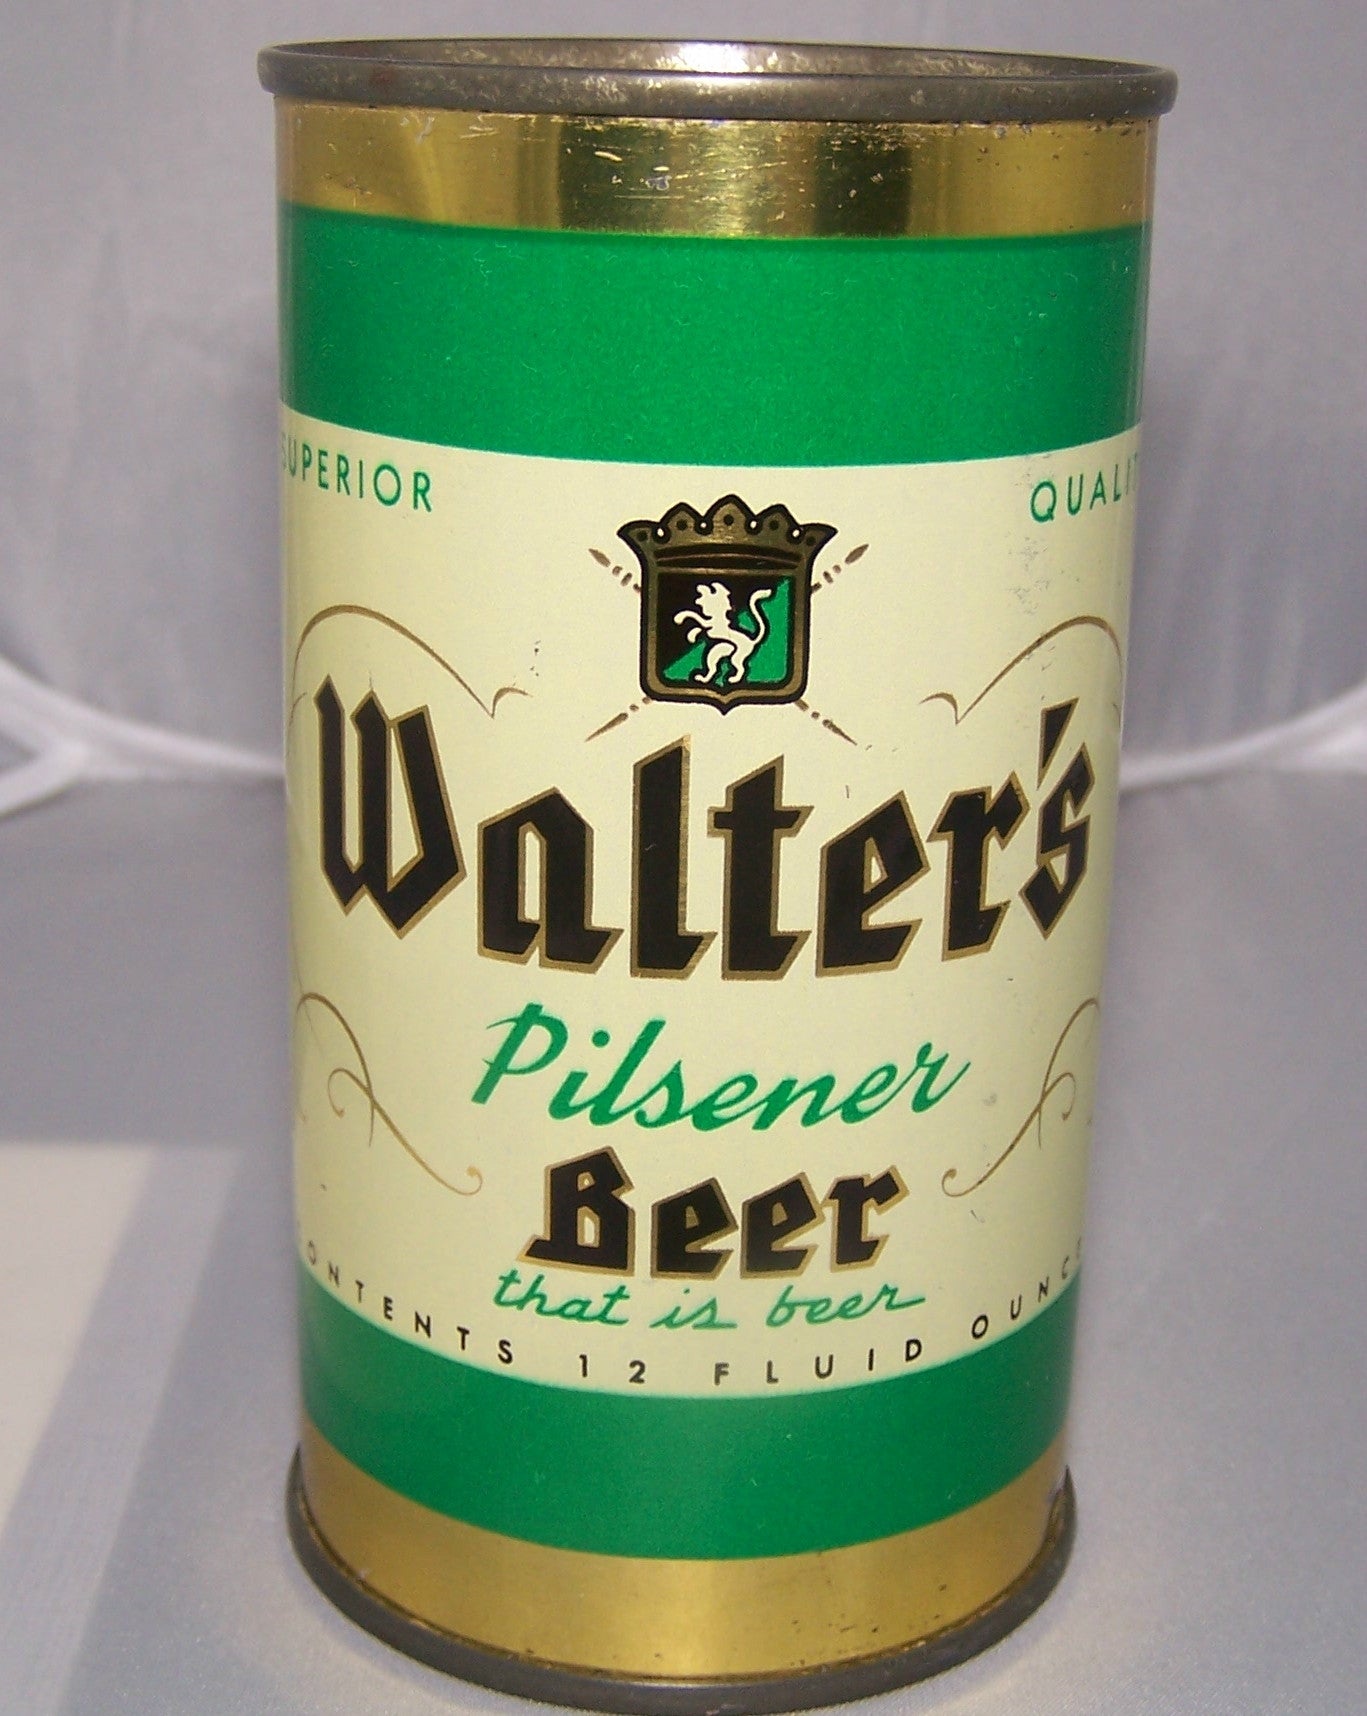 Walter's Pilsener Beer, USBC 144-21, Grade 1/1+ Sold on 2/22/15